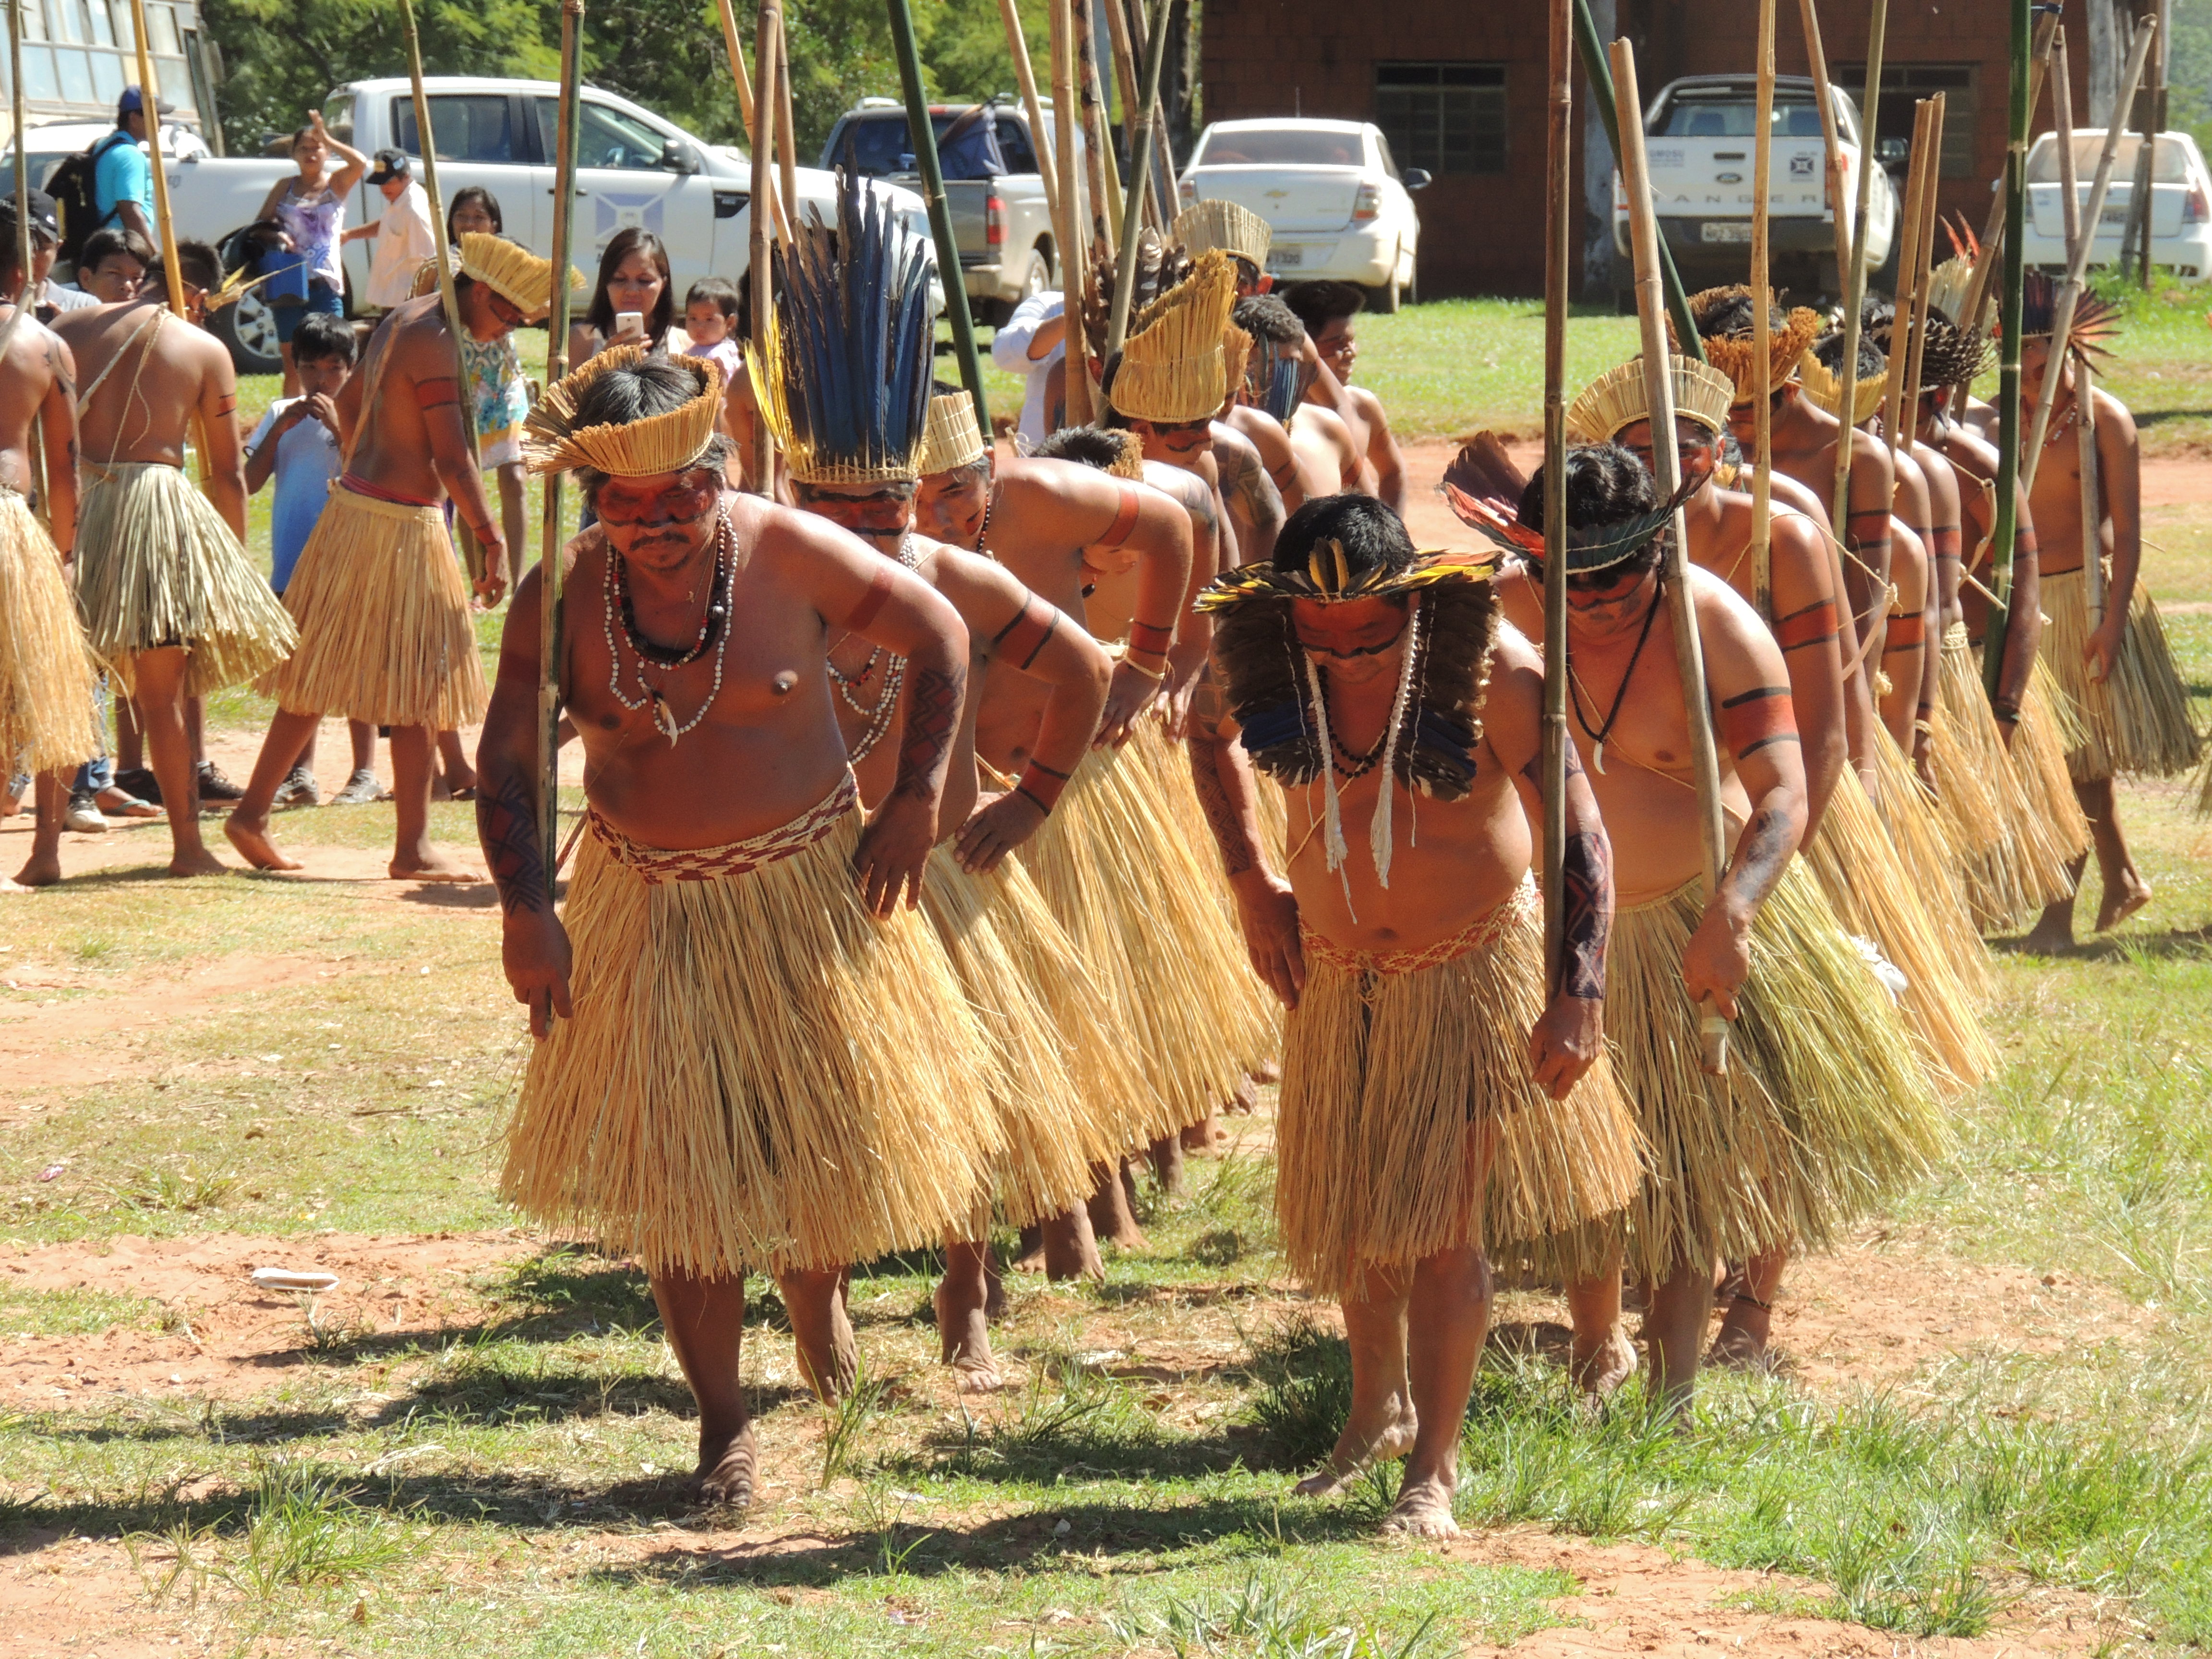 Imagem de índios realizando uma dança indígena.